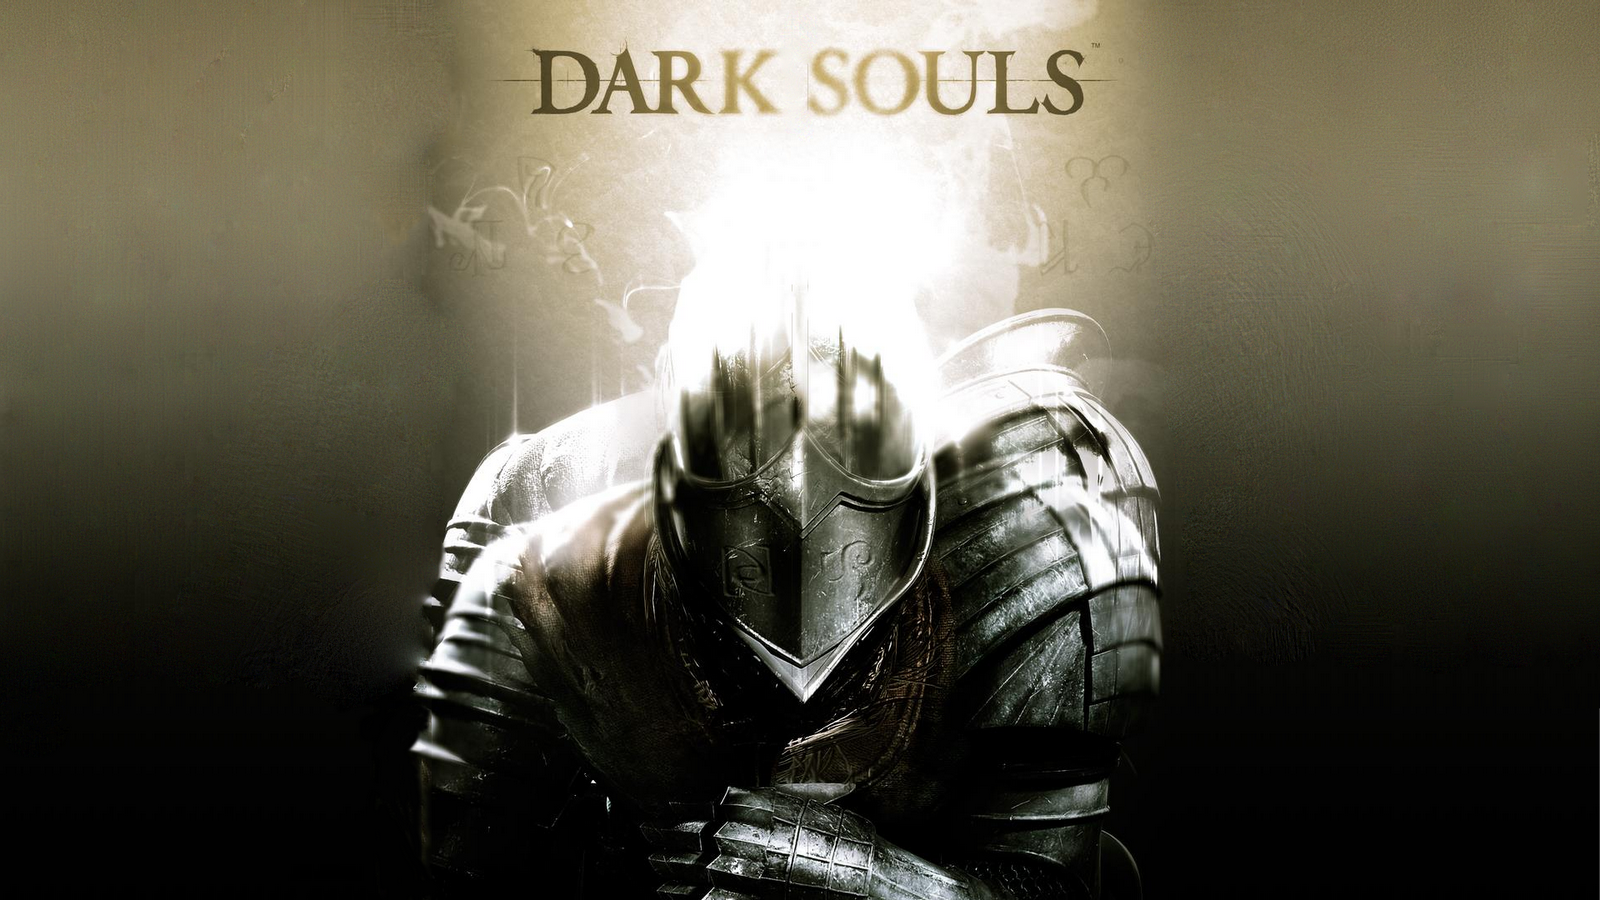 Wallpaper De Dark Souls En HD Es Un Juego Para Ps3 Lleno